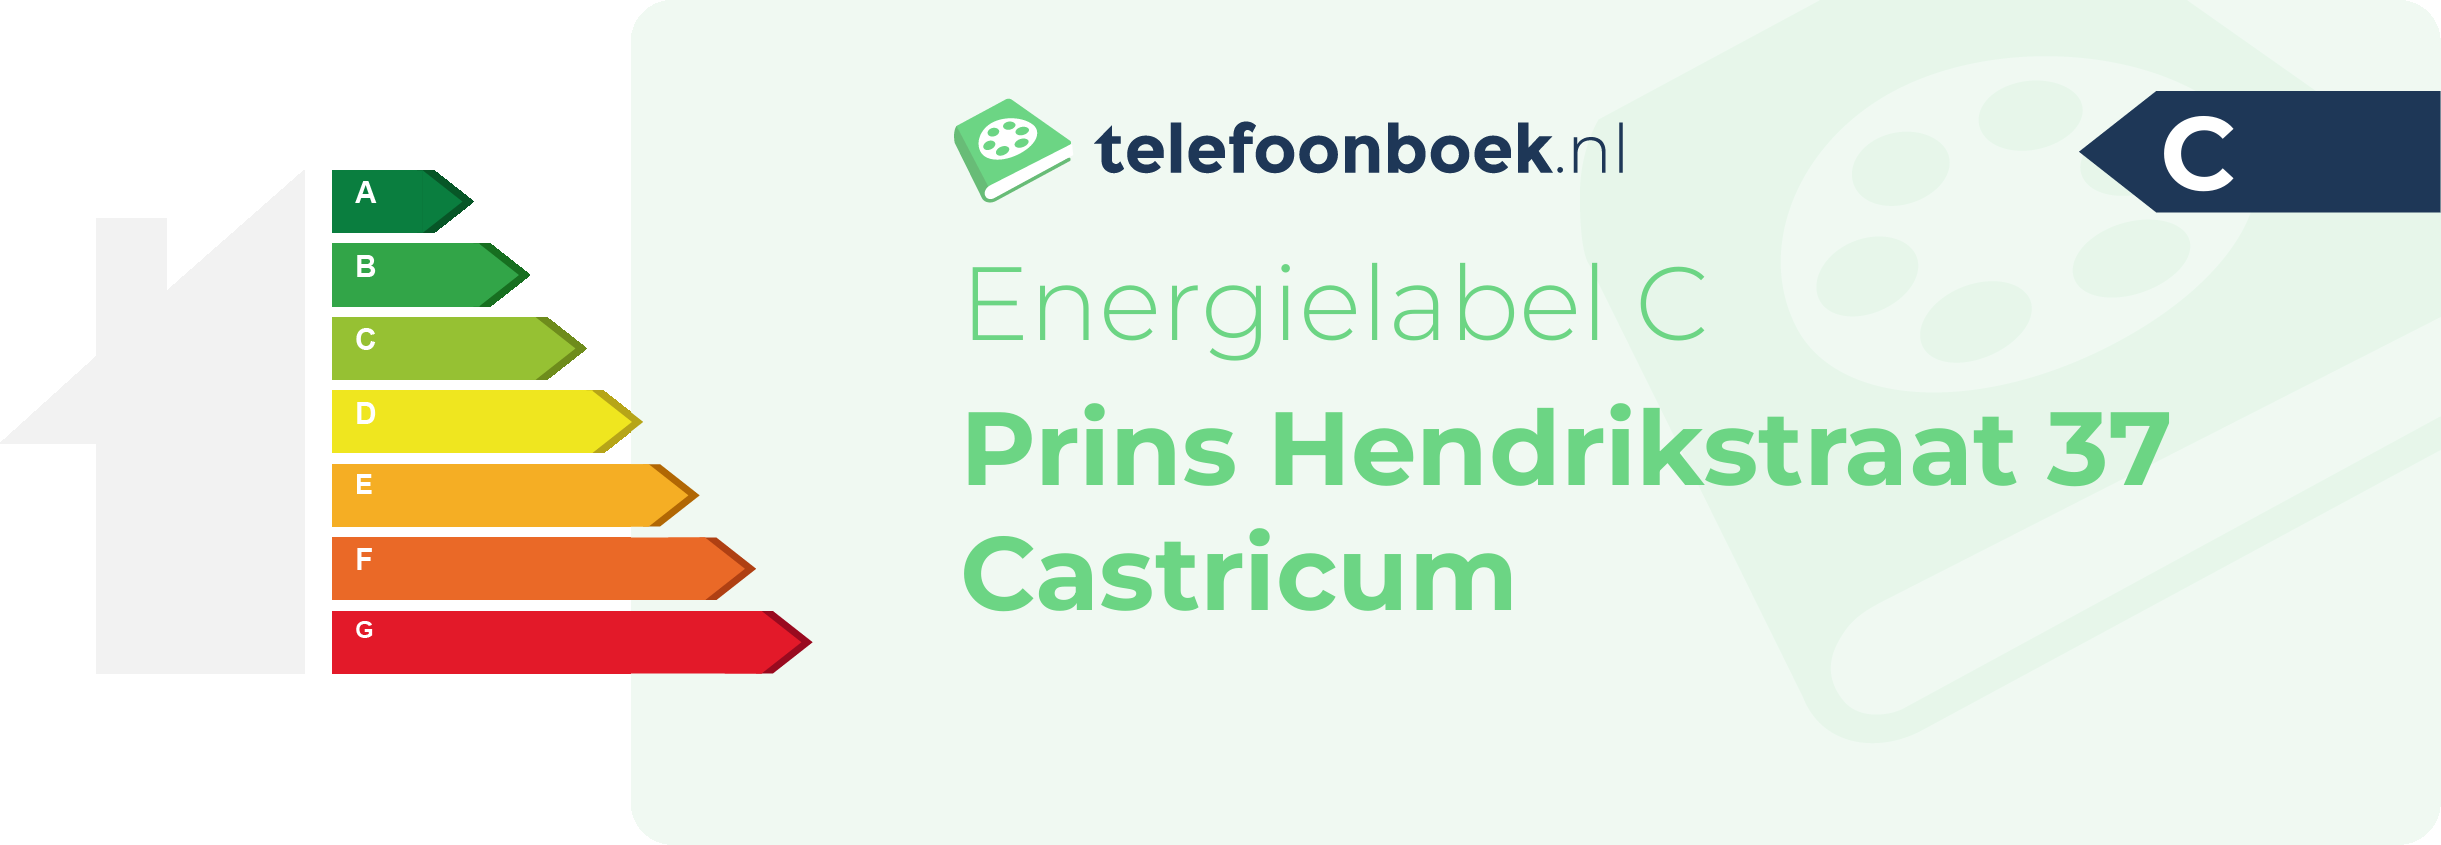 Energielabel Prins Hendrikstraat 37 Castricum